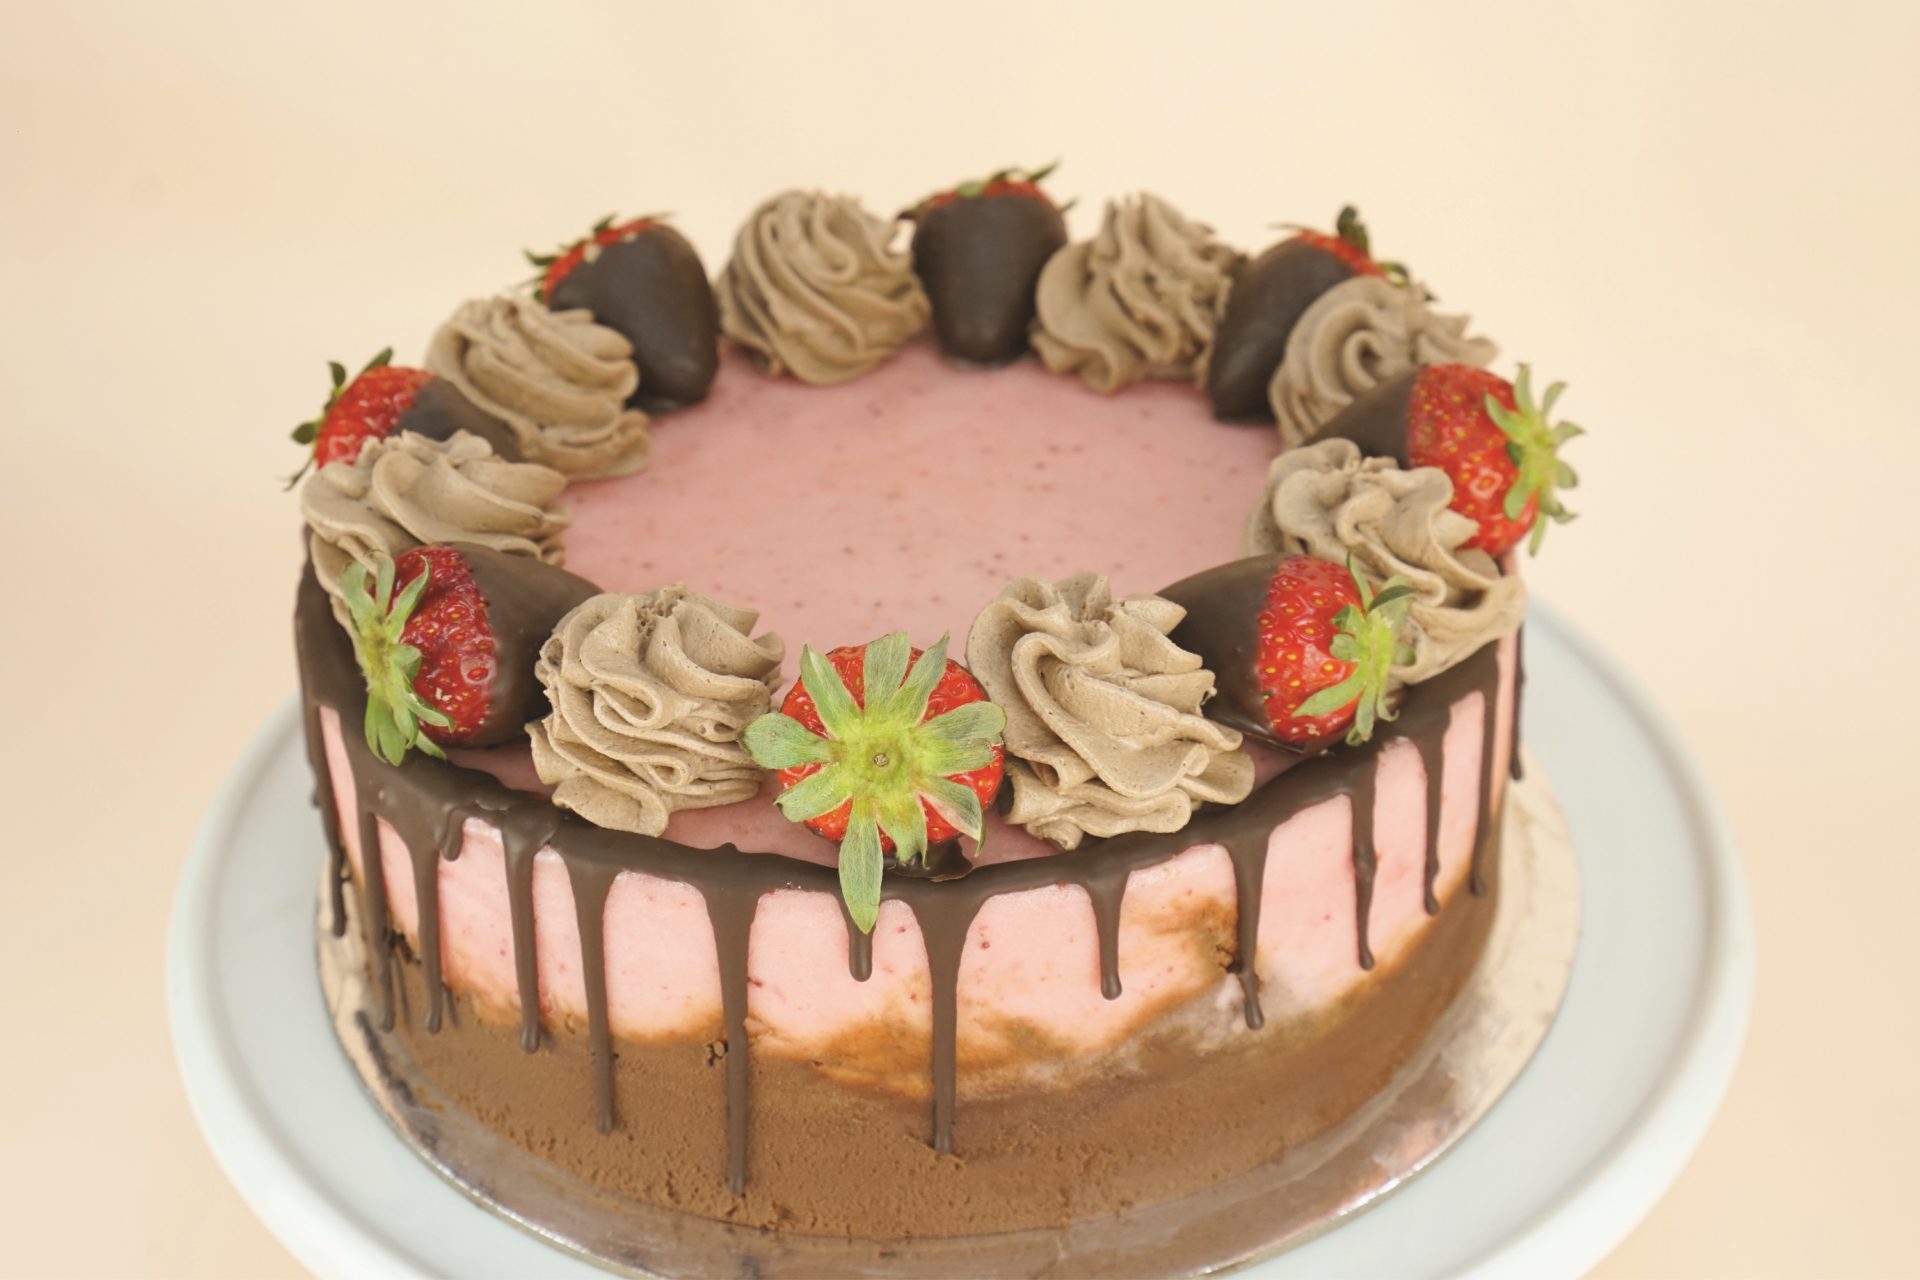 Choc Strawberry Gelato Cake